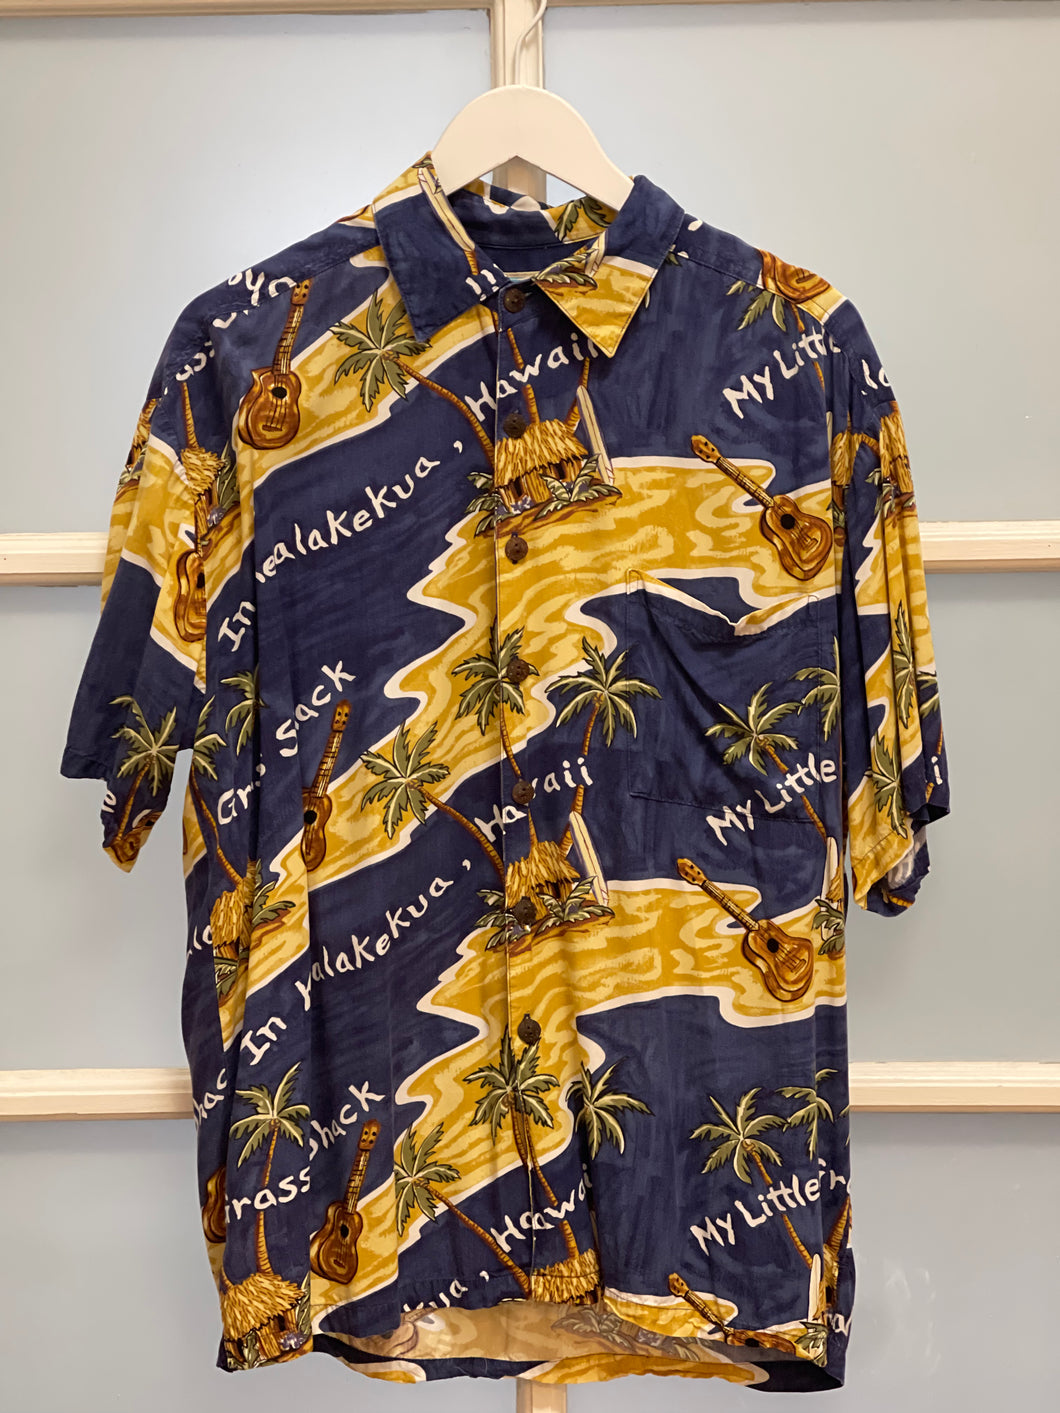 Ohanalei Vintage - Hawaii “Grass Shack/Ukulele” Aloha Shirt